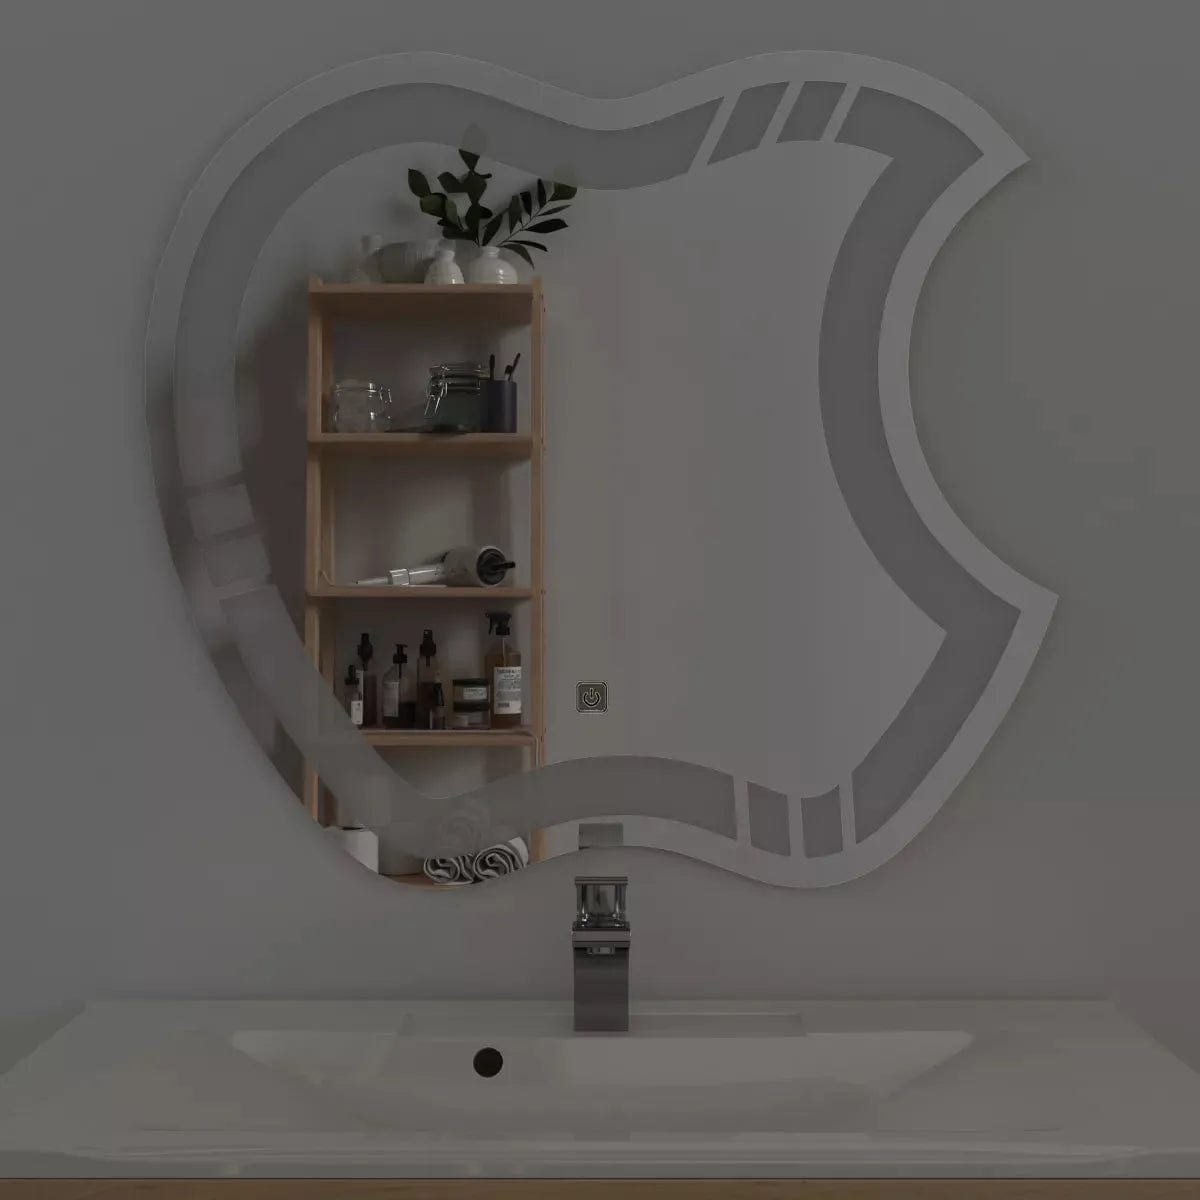 Artistic Apple LED Bathroom Mirror